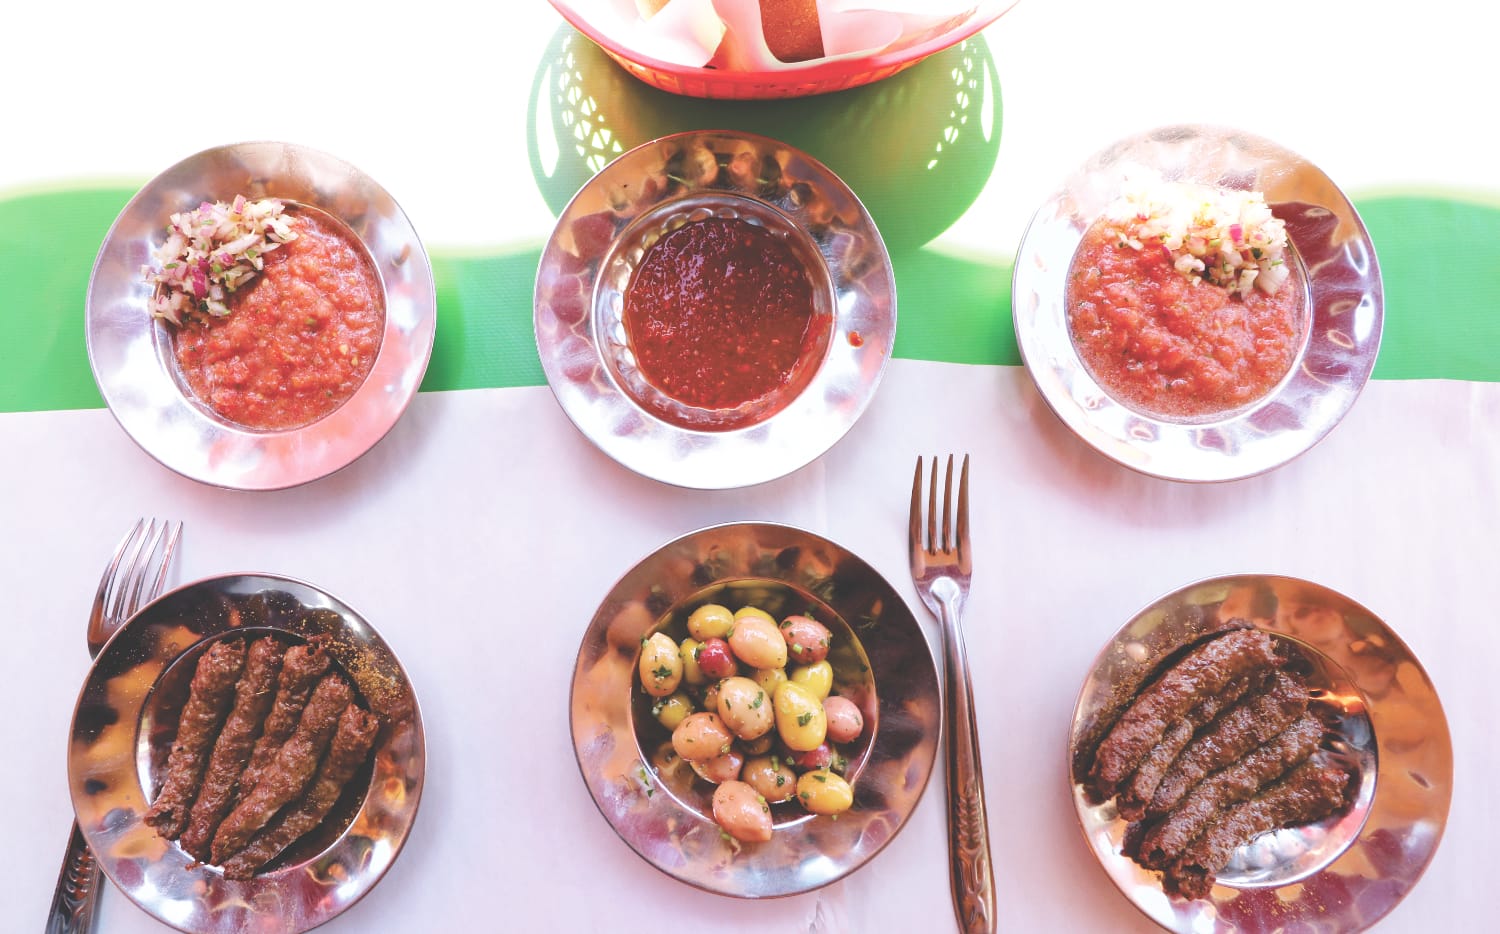 Marokko typisches Essen und Trinken - Kefta / Brochette